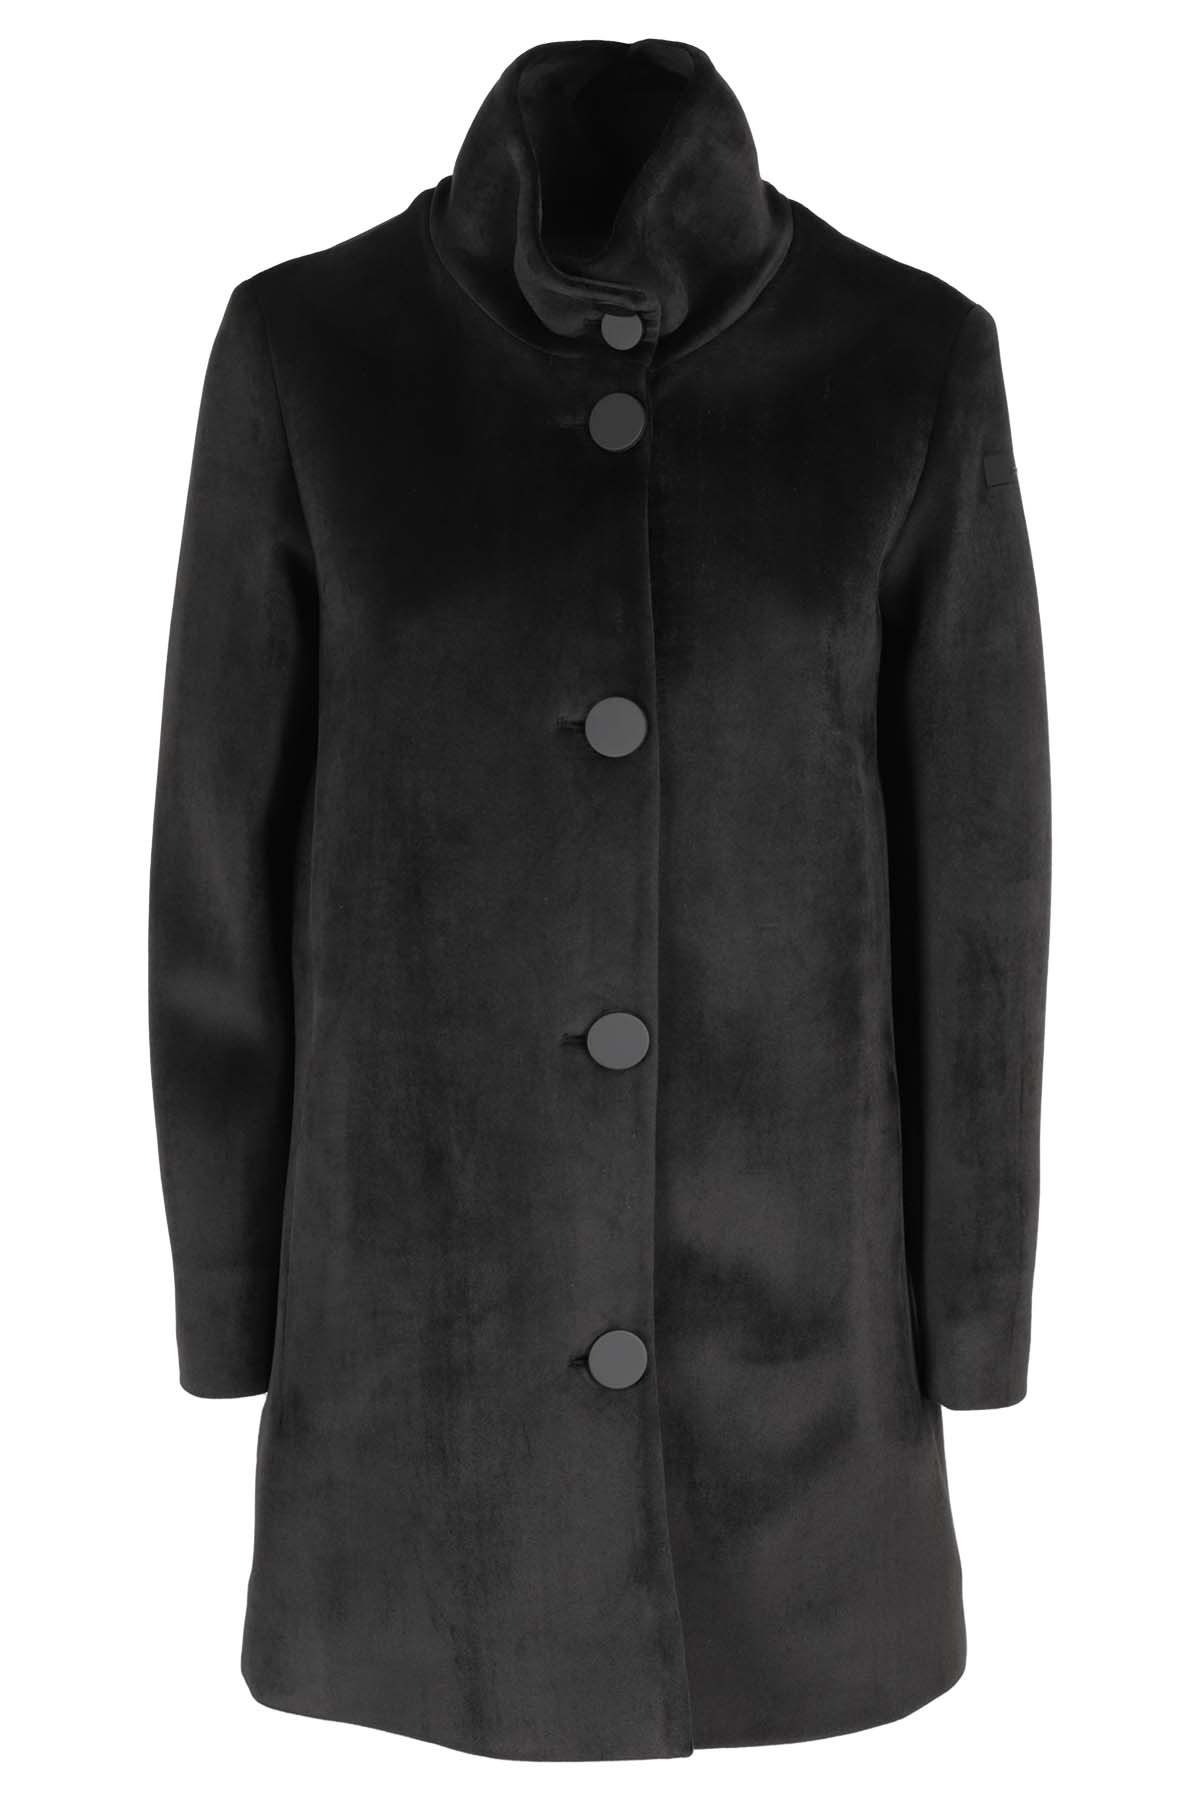 Rrd - Roberto Ricci Design Jkt Velvet Neo Coat Lady In Black | ModeSens